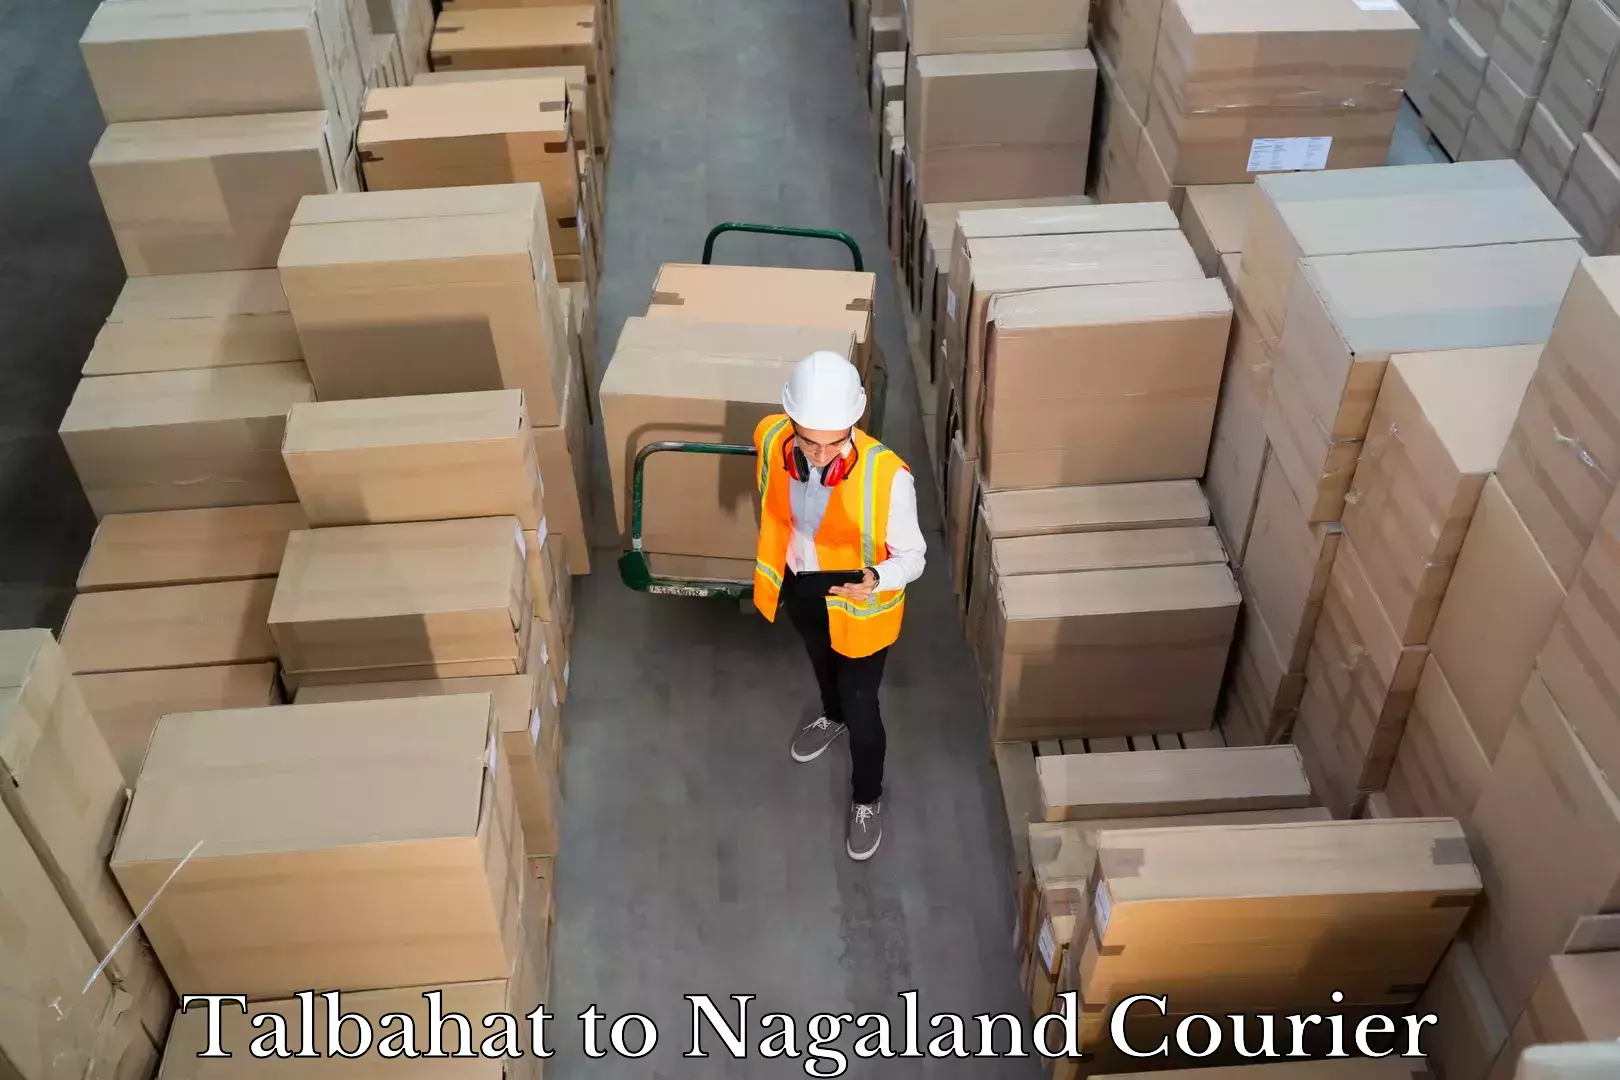 Luggage shipment tracking Talbahat to Wokha